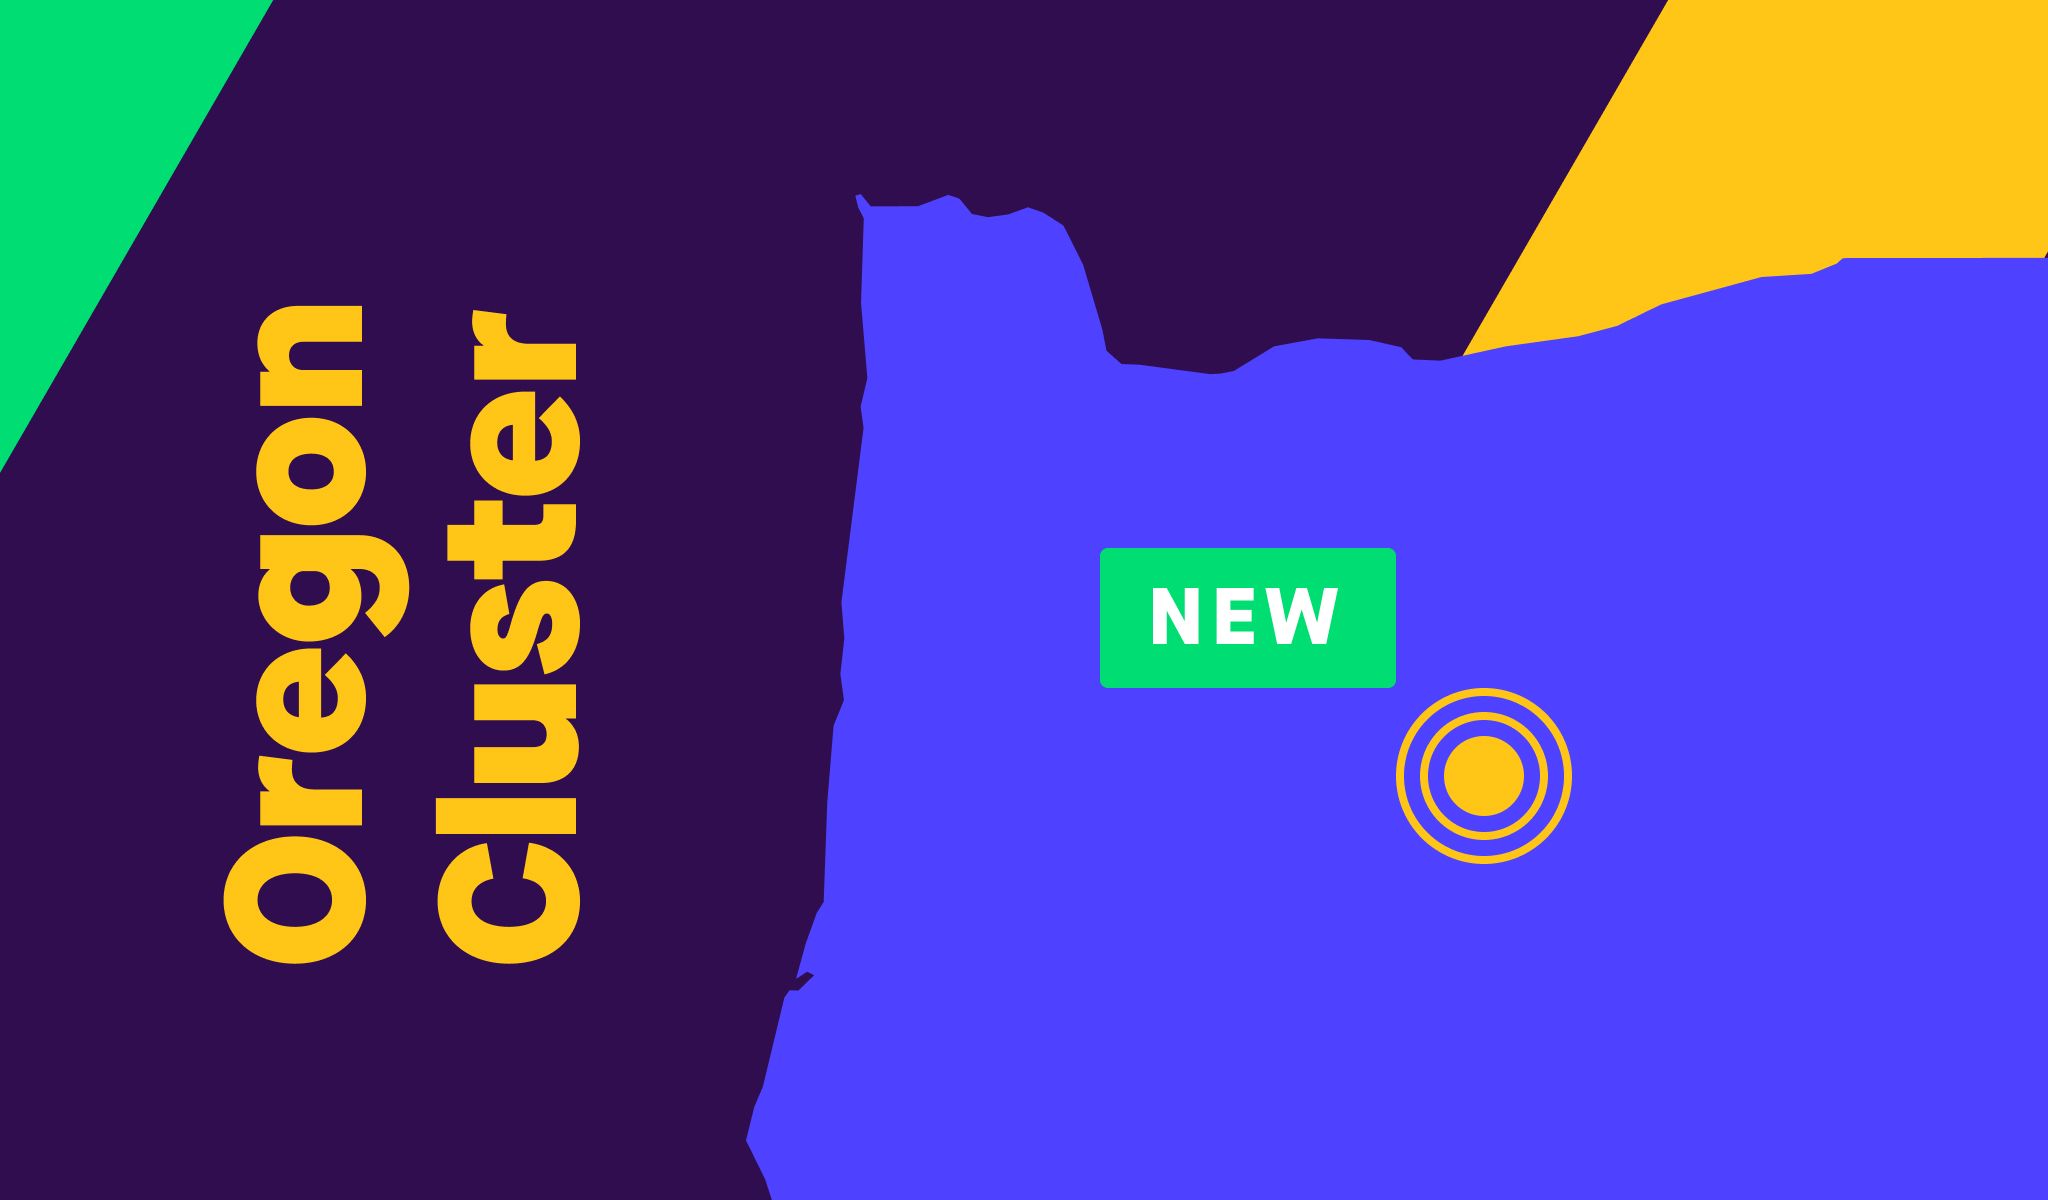 New-US-Cluster.jpg